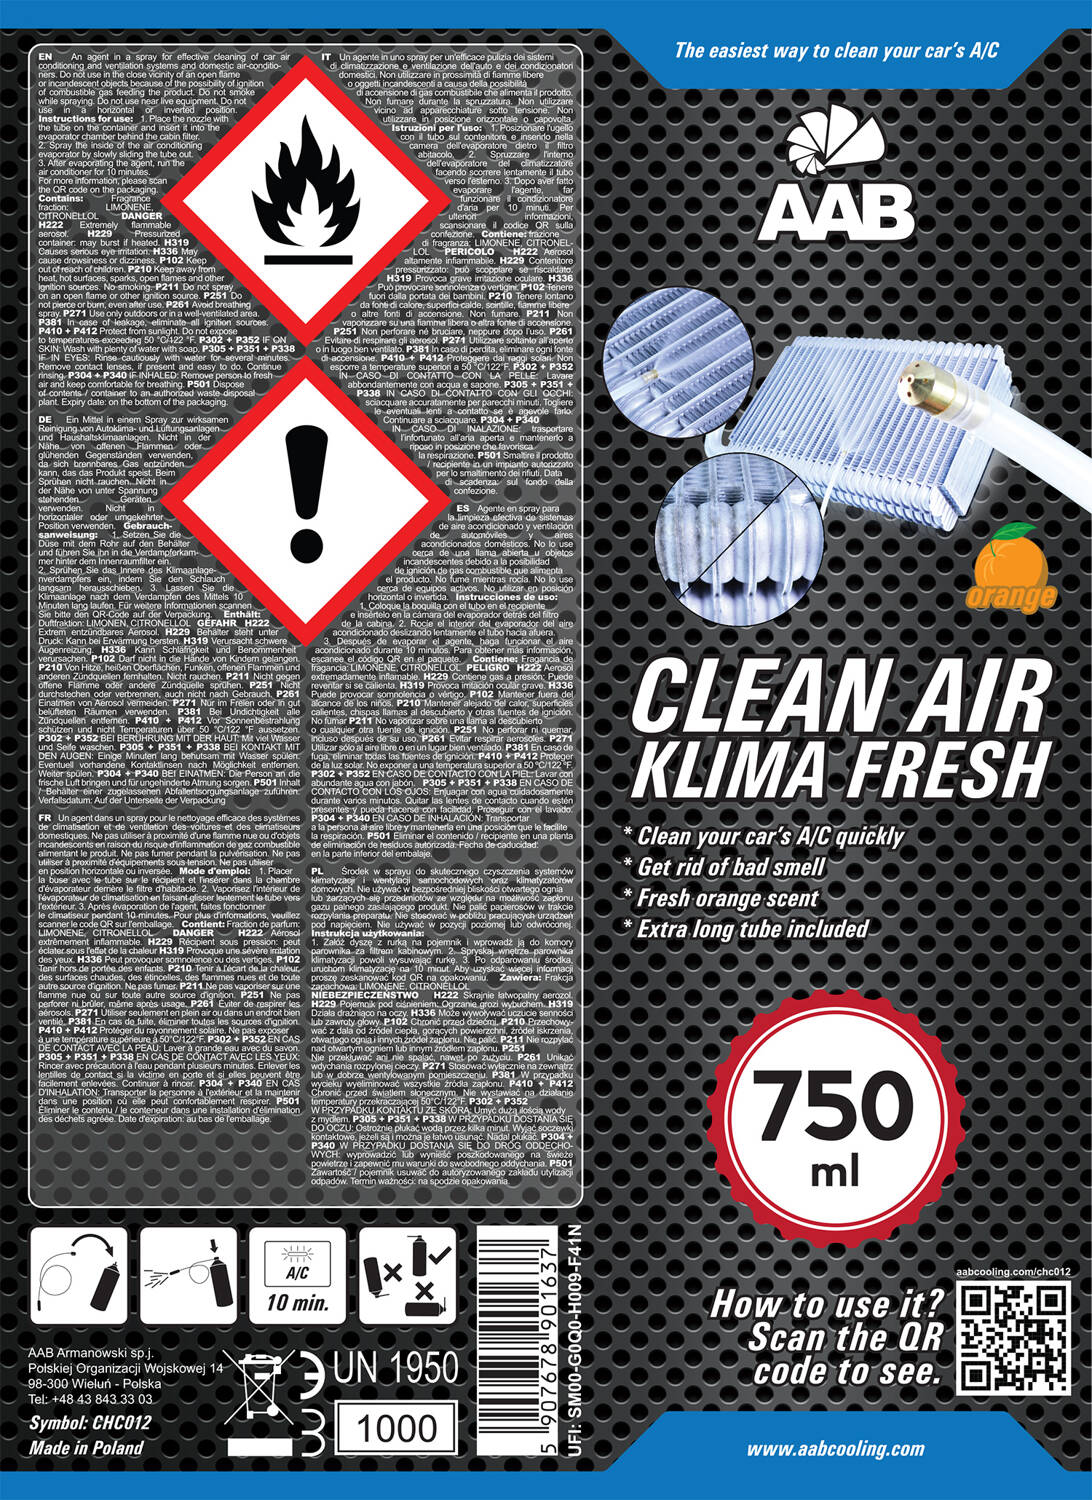 aab_clean_air_klima_fresh_750ml_dsc_1745_10